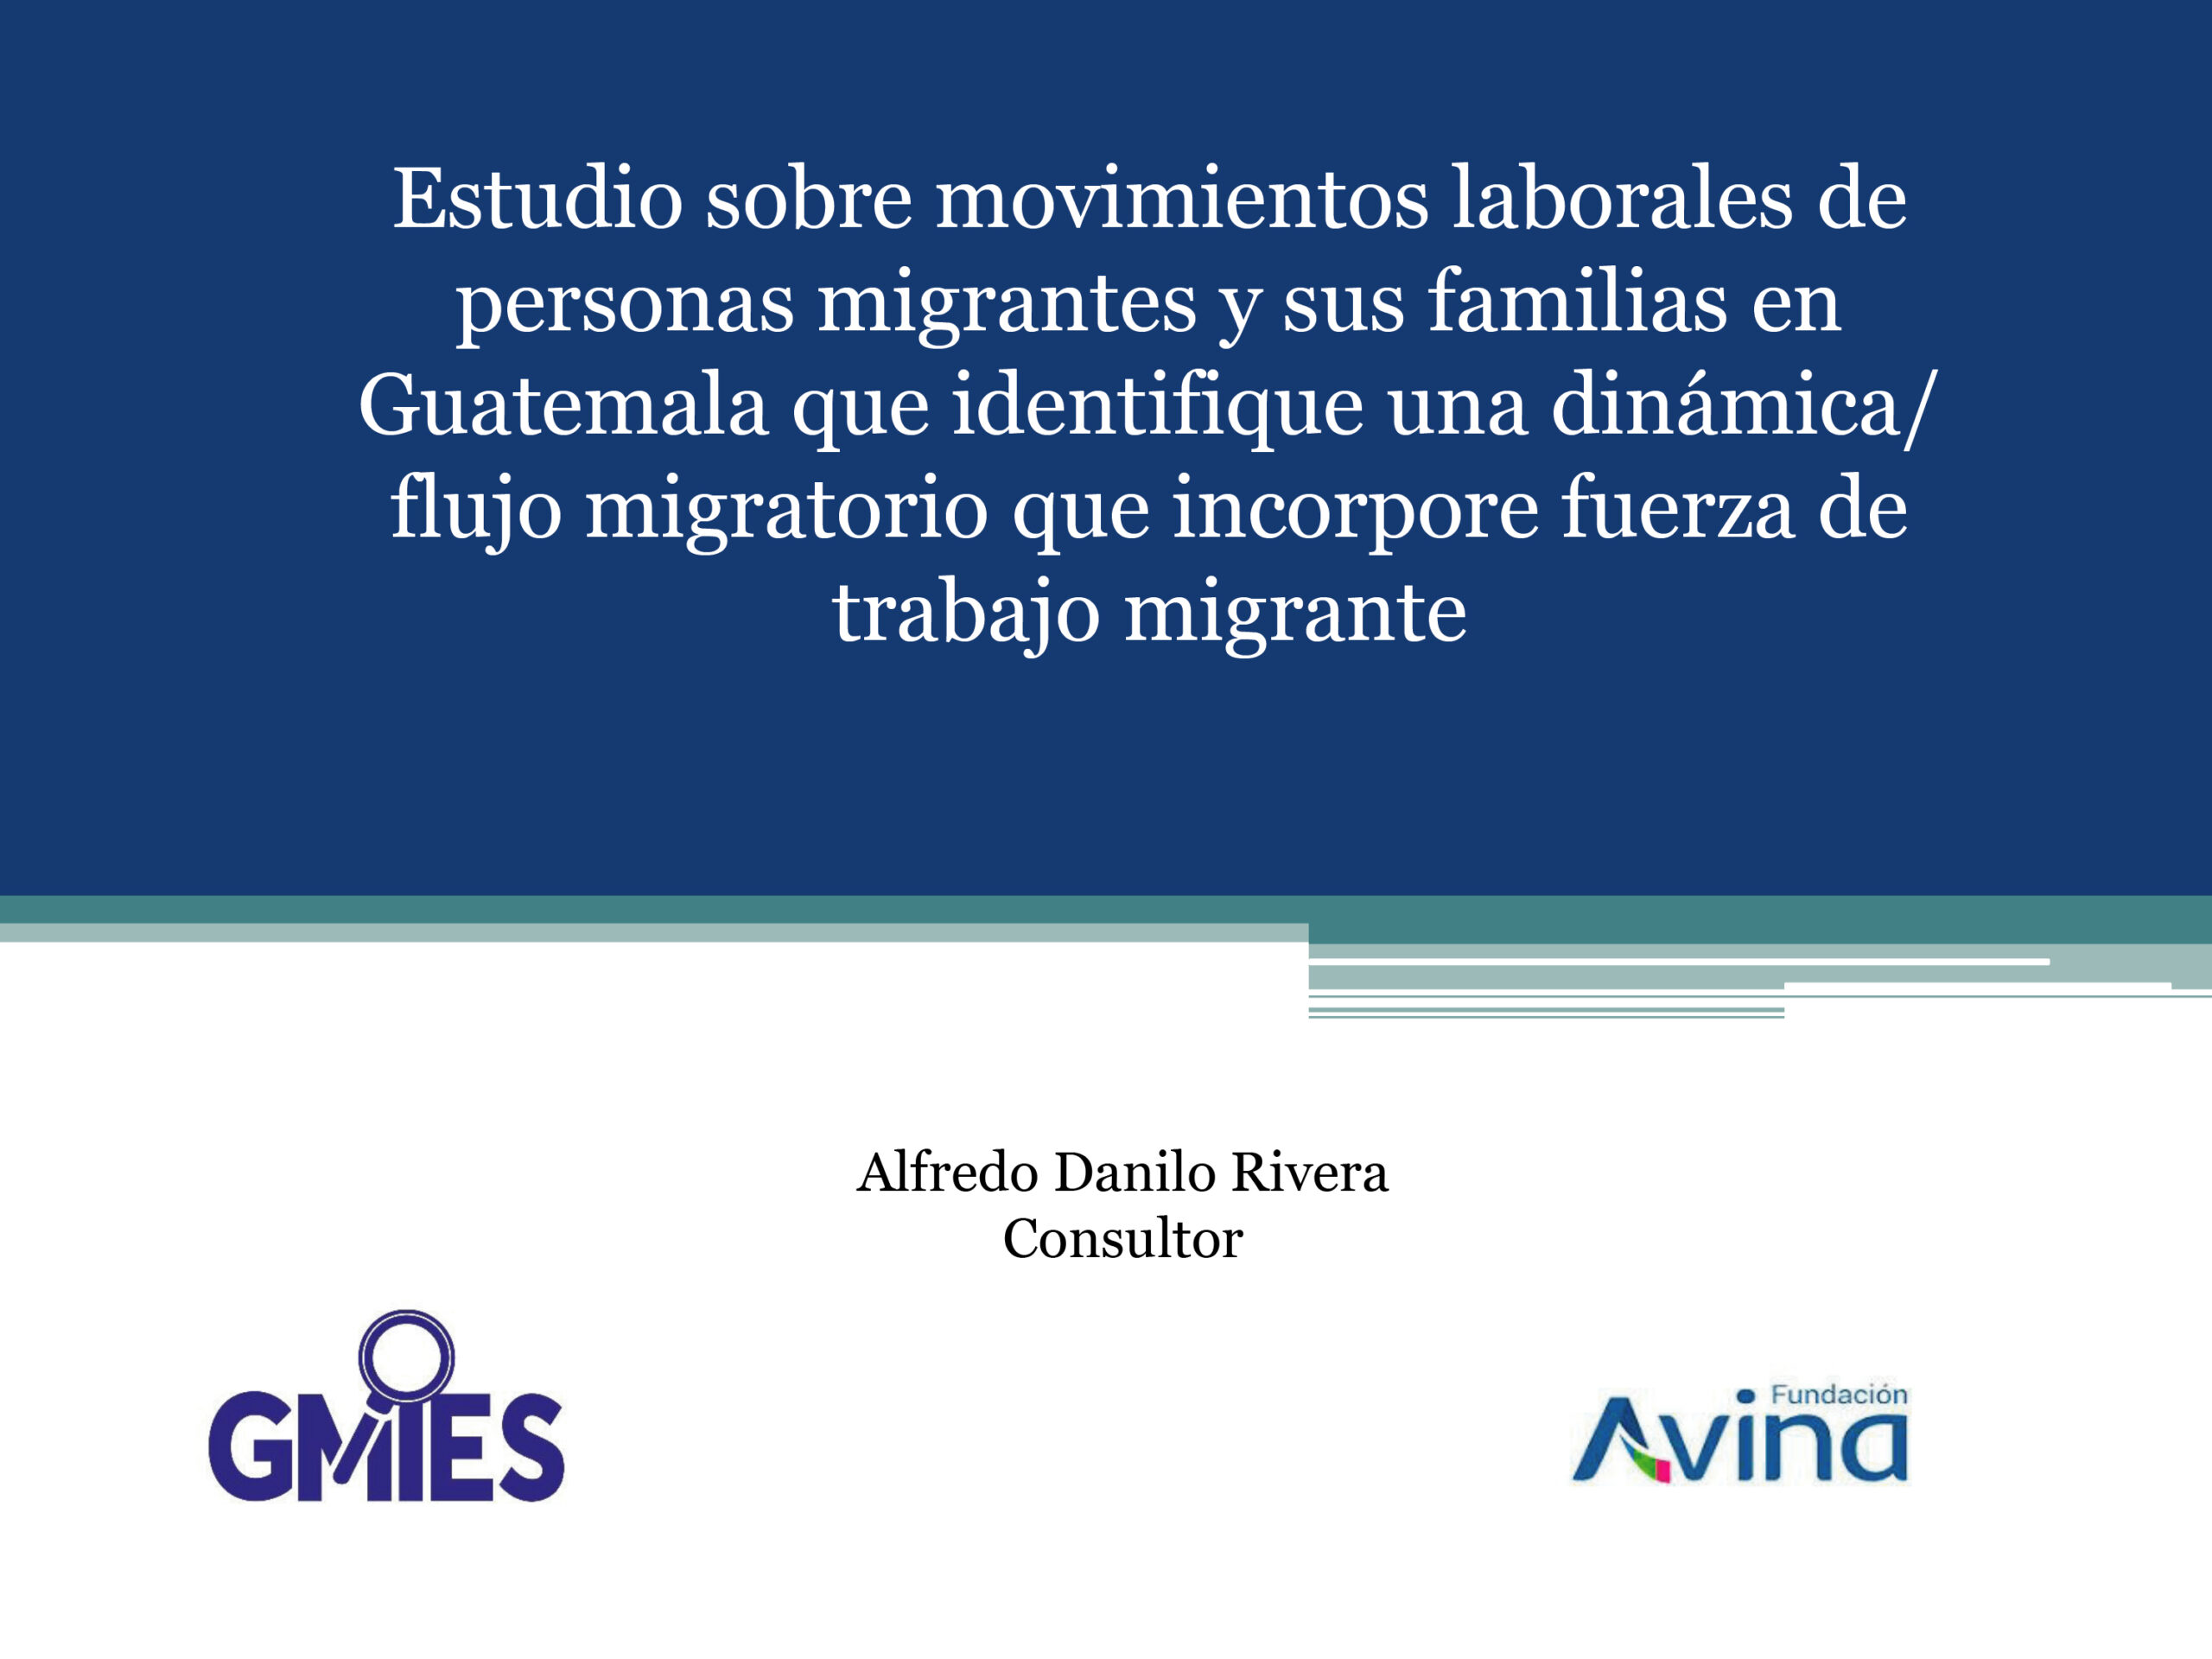 Presentación: Estudio sobre movimientos laborales de personas migrantes y sus familias en Guatemala que identifique una dinámica/flujo migratorio que incorpore fuerza de trabajo migrante.